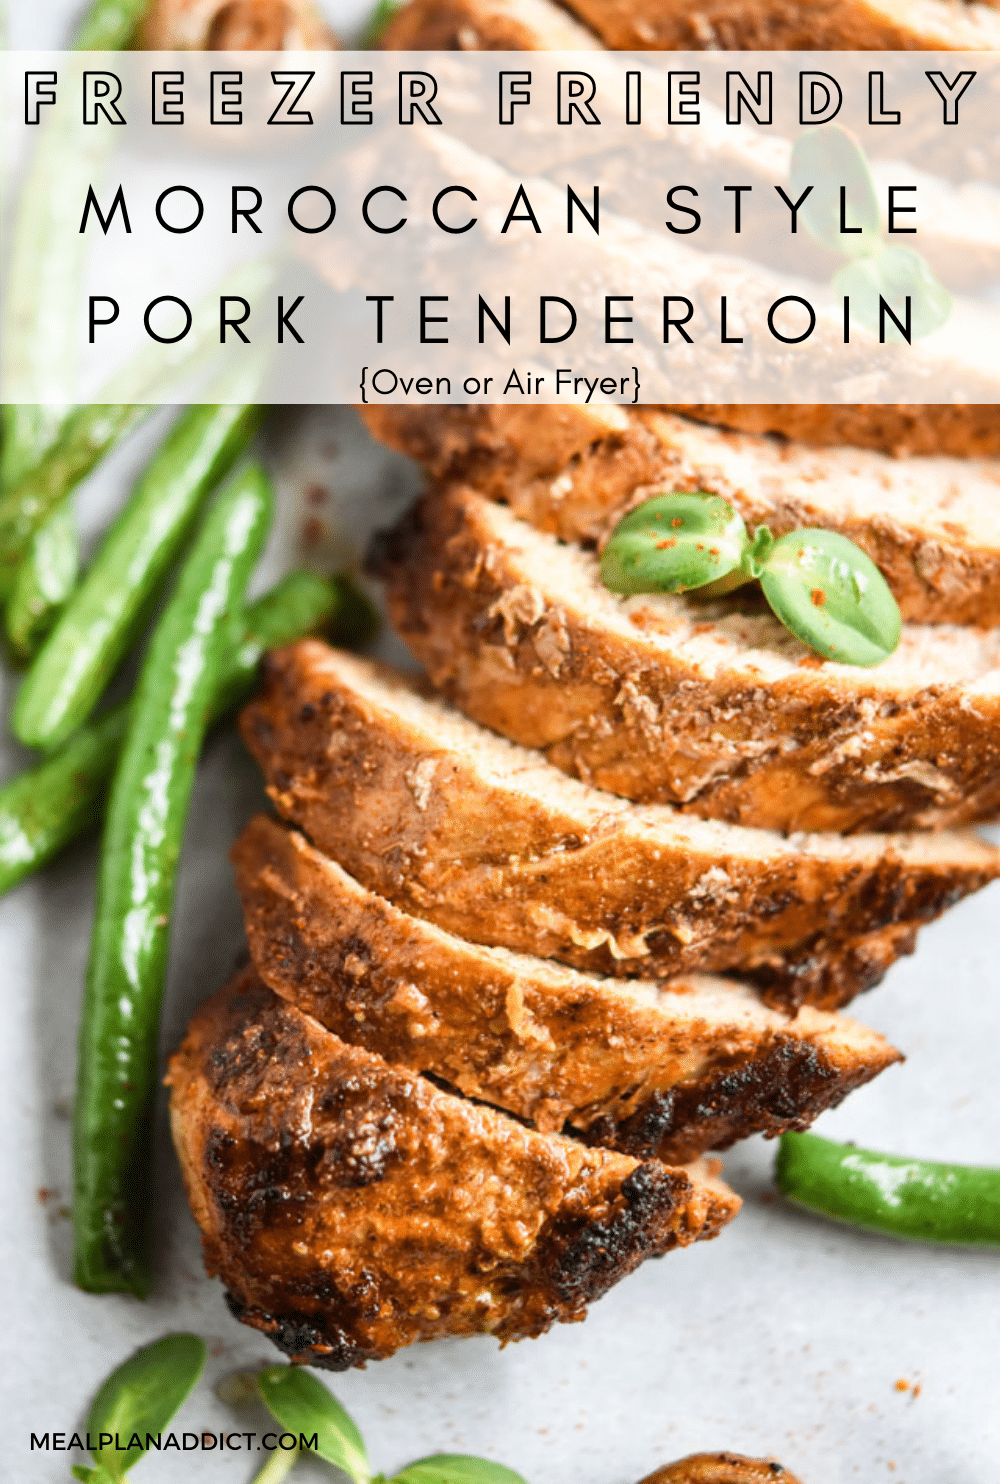 Pork tenderloin pin for Pinterest